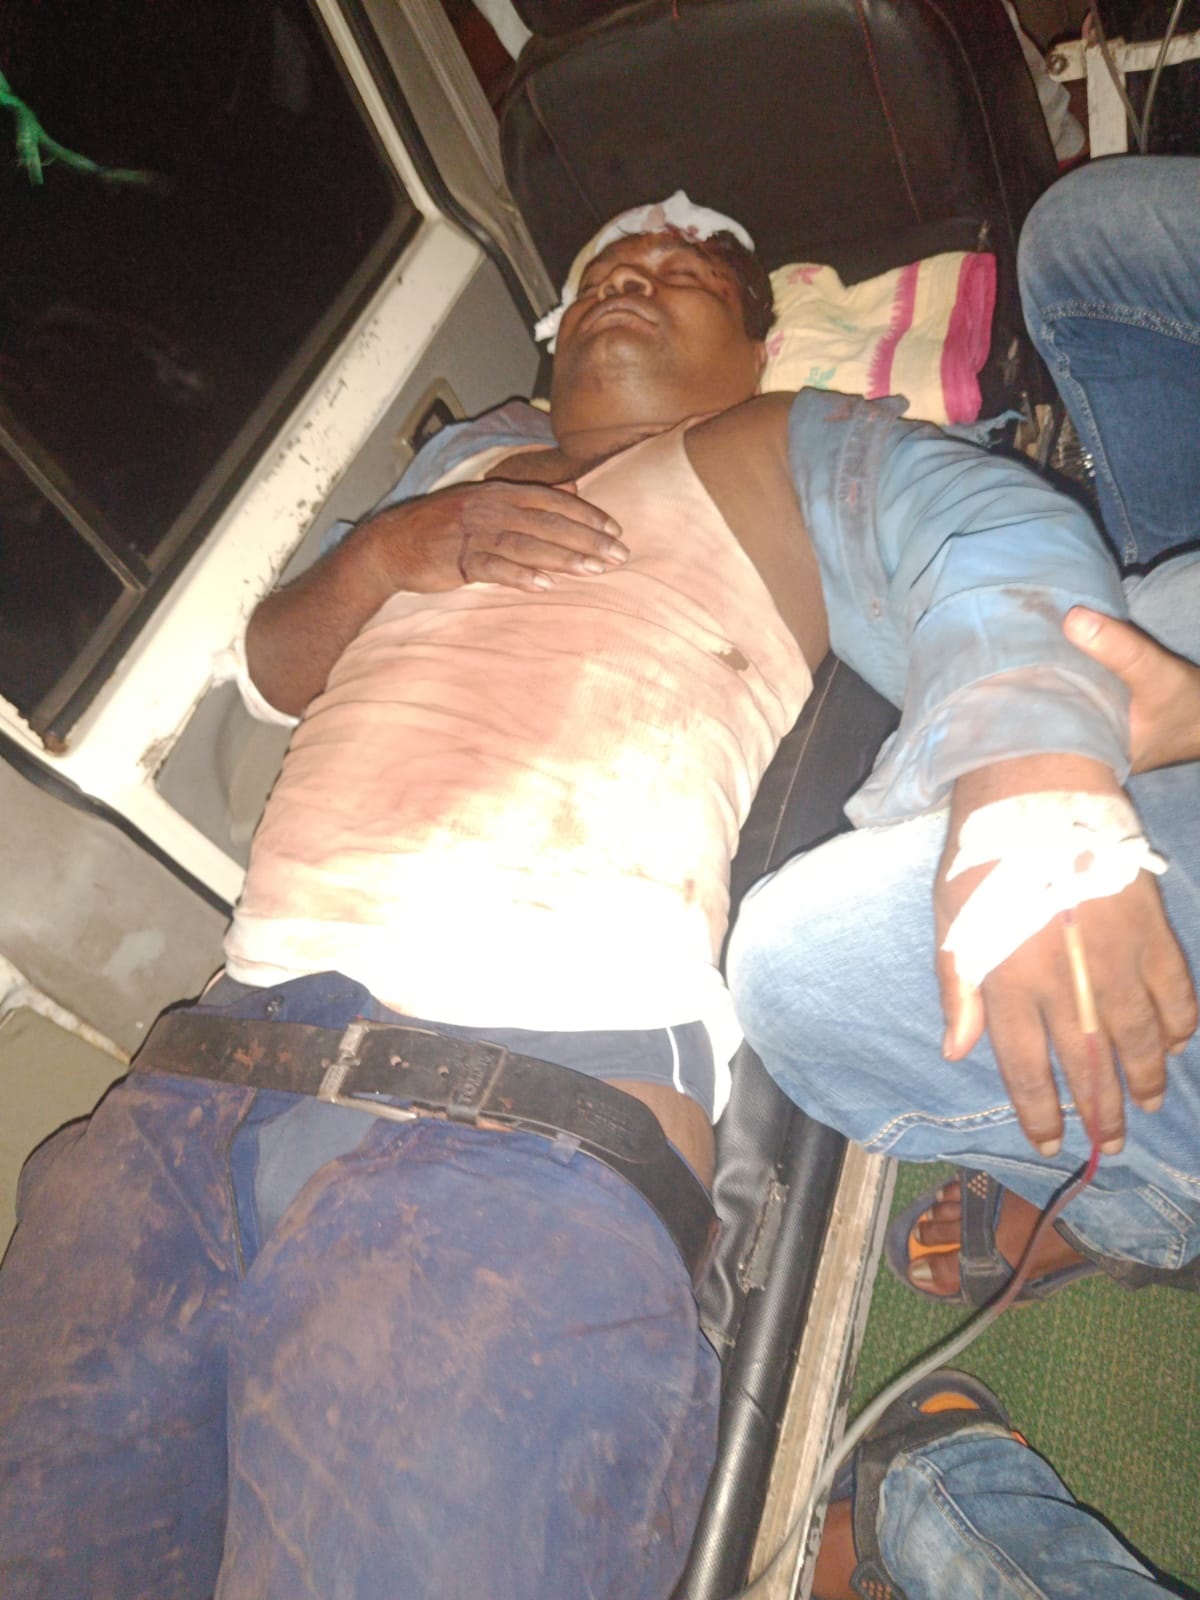 ओडिशा ट्रेन हादसा : कोरोमंडल एक्सप्रेस के लोको पायलटों की स्थिति गंभीर, भुवनेश्वर में चल रहा इलाज